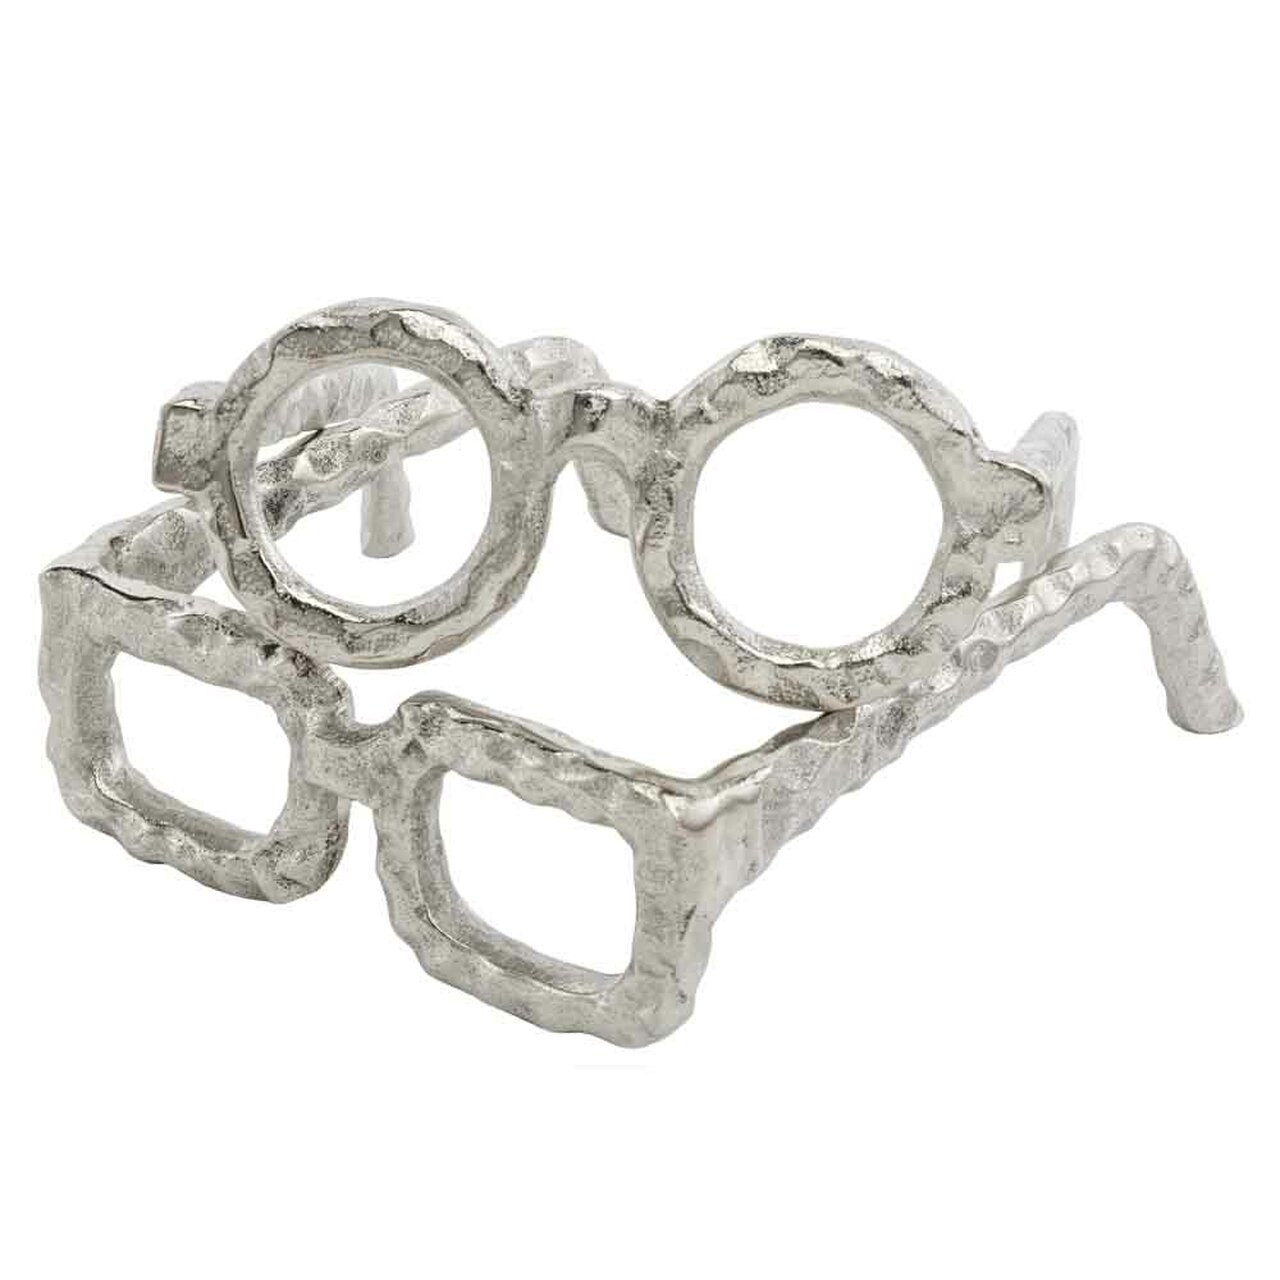 6.5" x 6" x 2" Silver Round Glasses